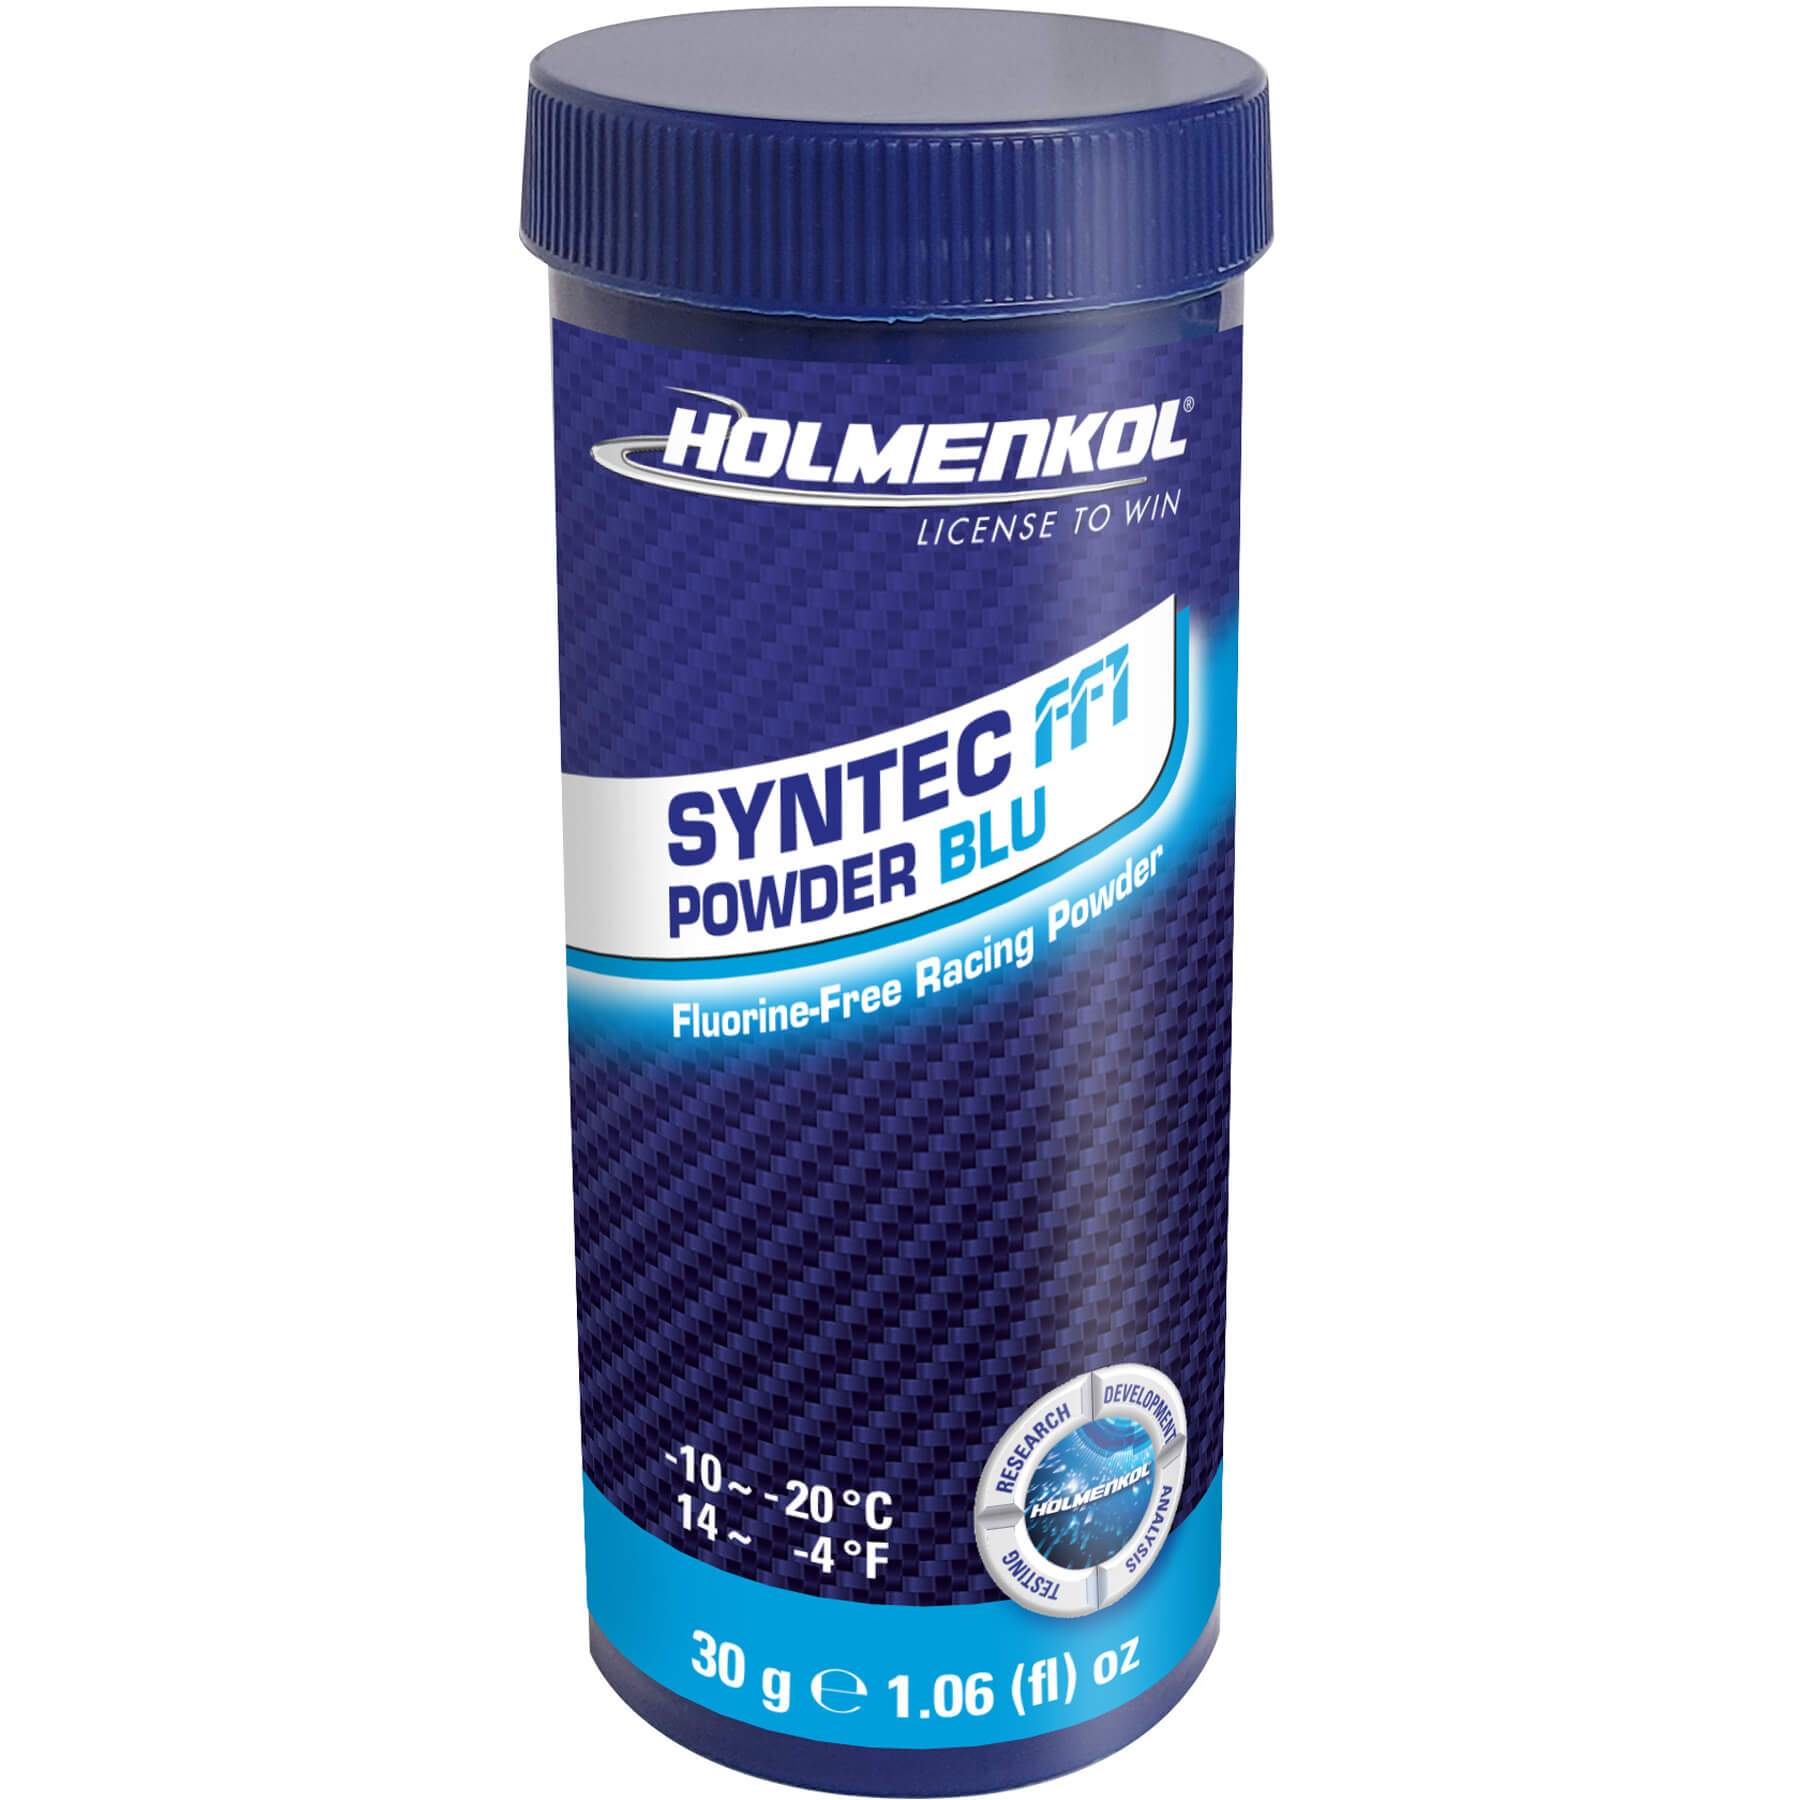 Holmenkol Syntec FF1 Powder 30g